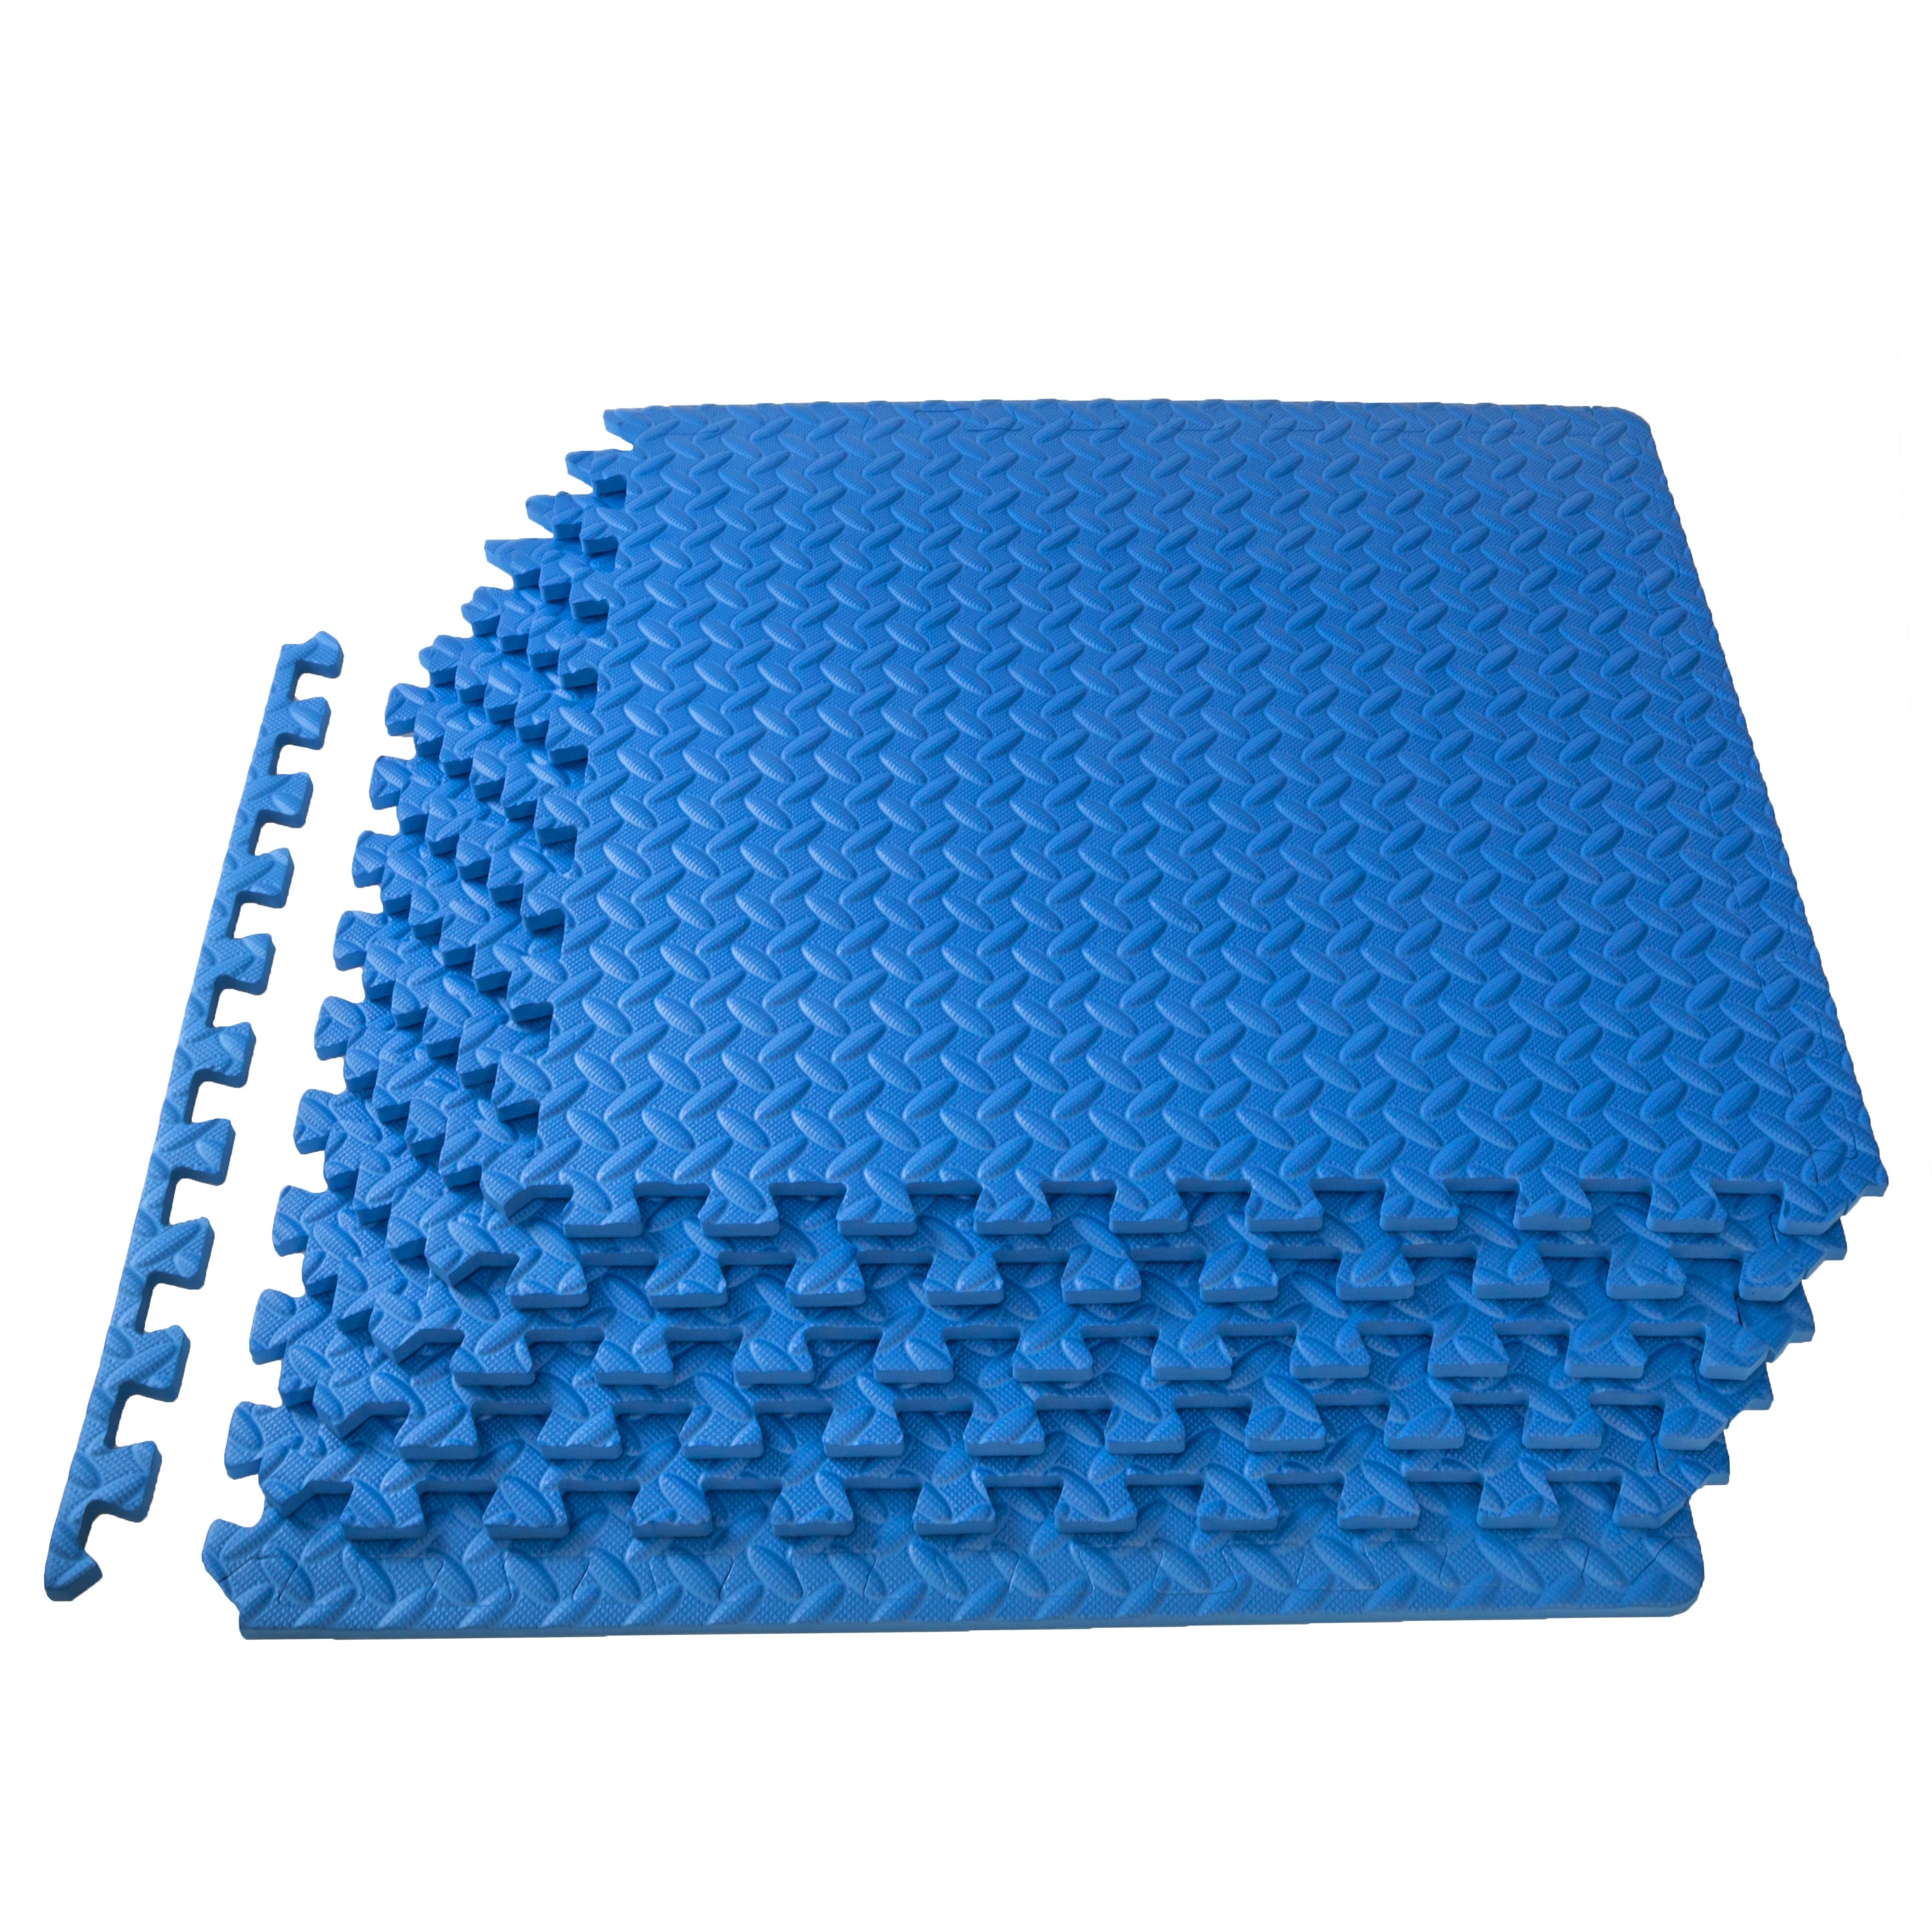 24 sq ft orange interlocking foam floor puzzle tile mat puzzle mat flooring 